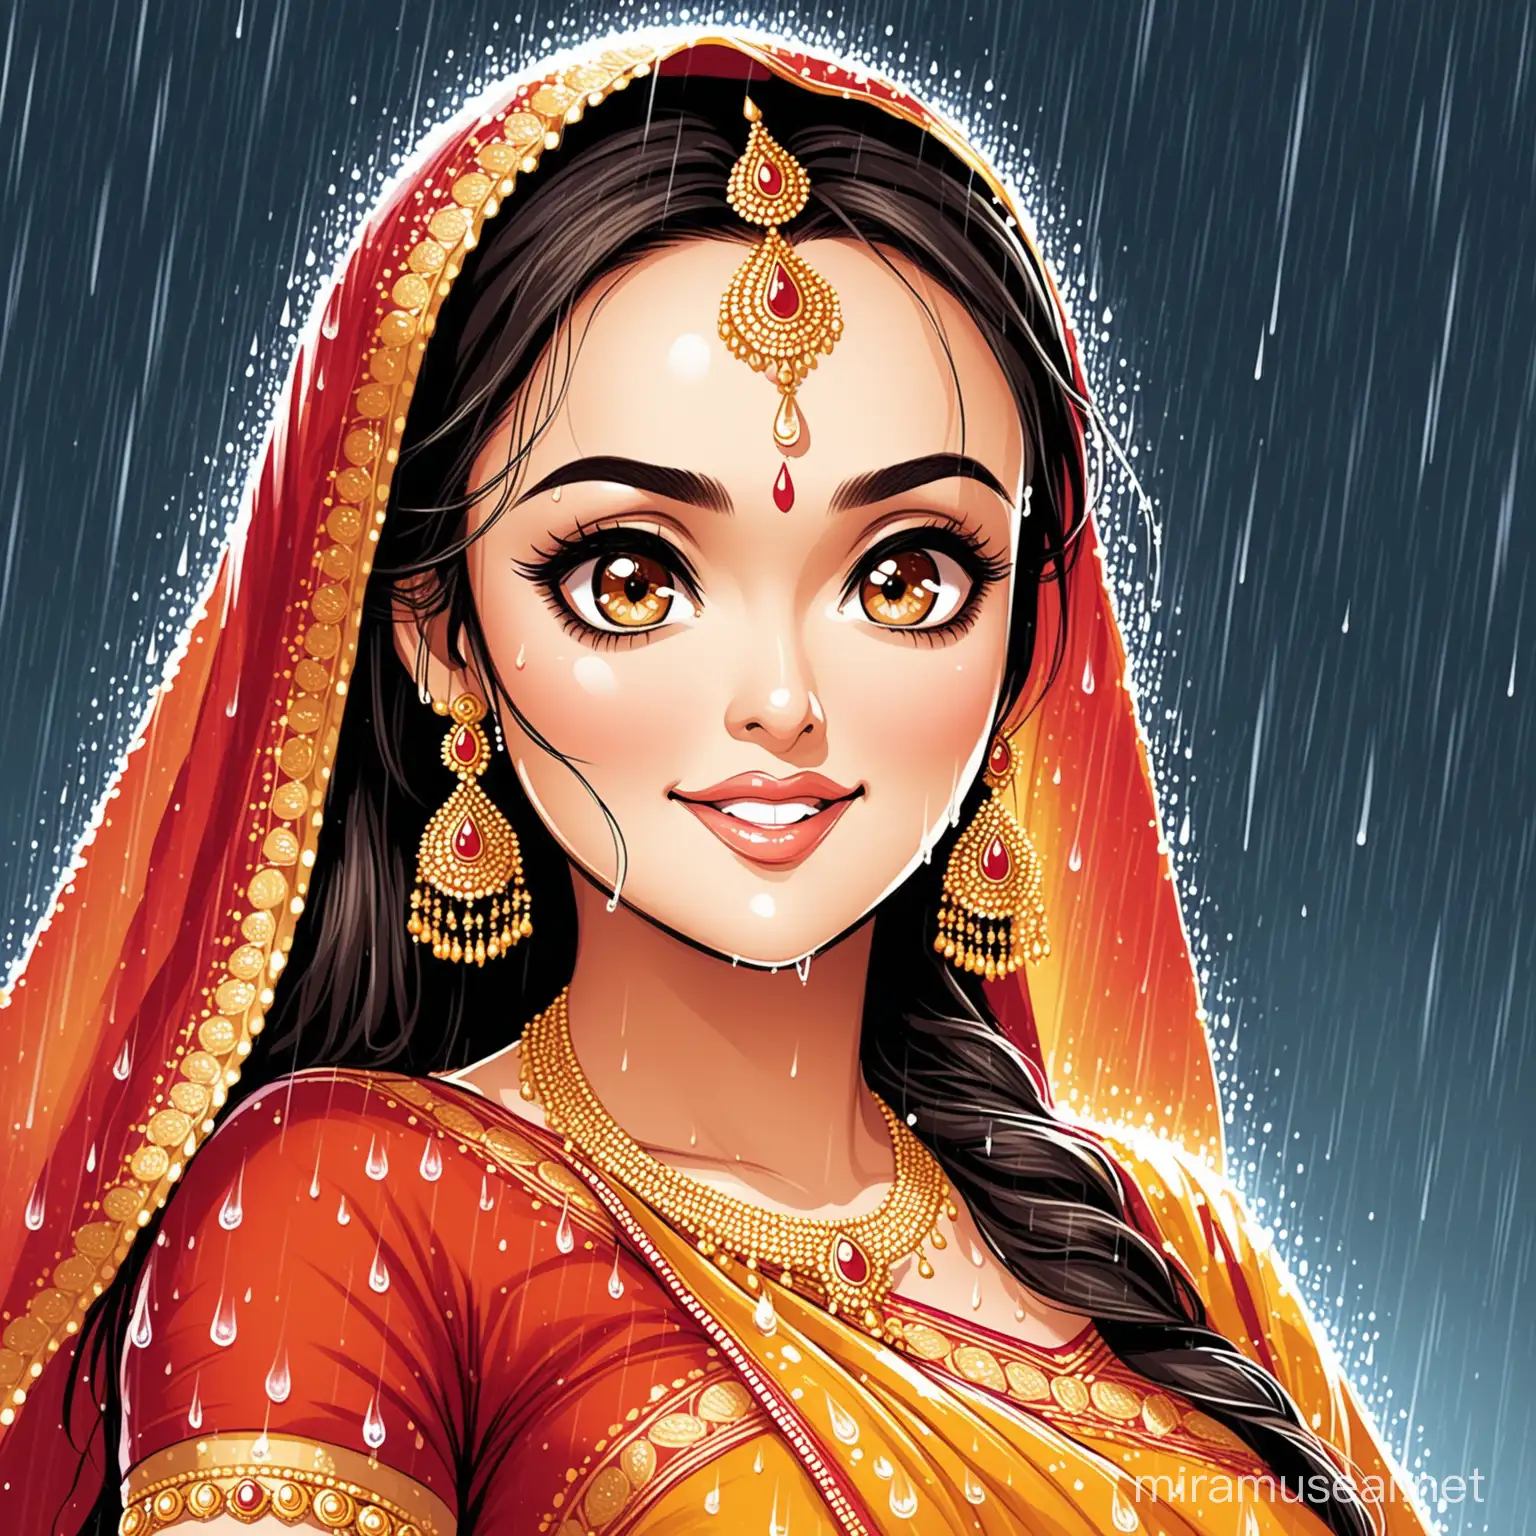 Preety Zinta Dancing in the Rain Saree and Big Gold Earrings